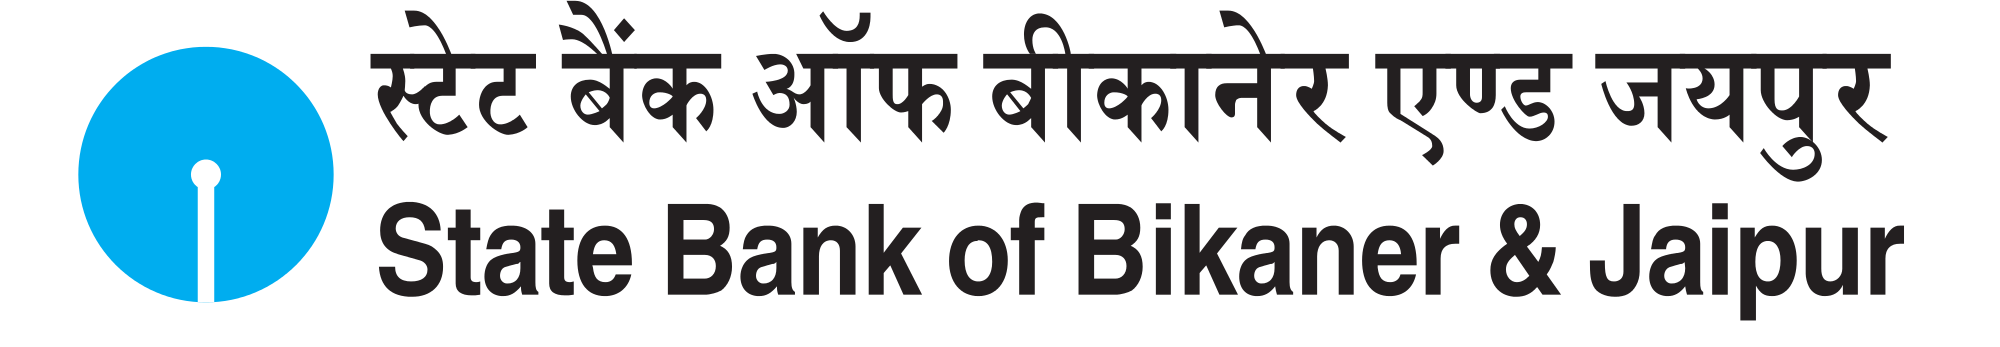 State Bank of Bikaner & Jaipur Brand Logo